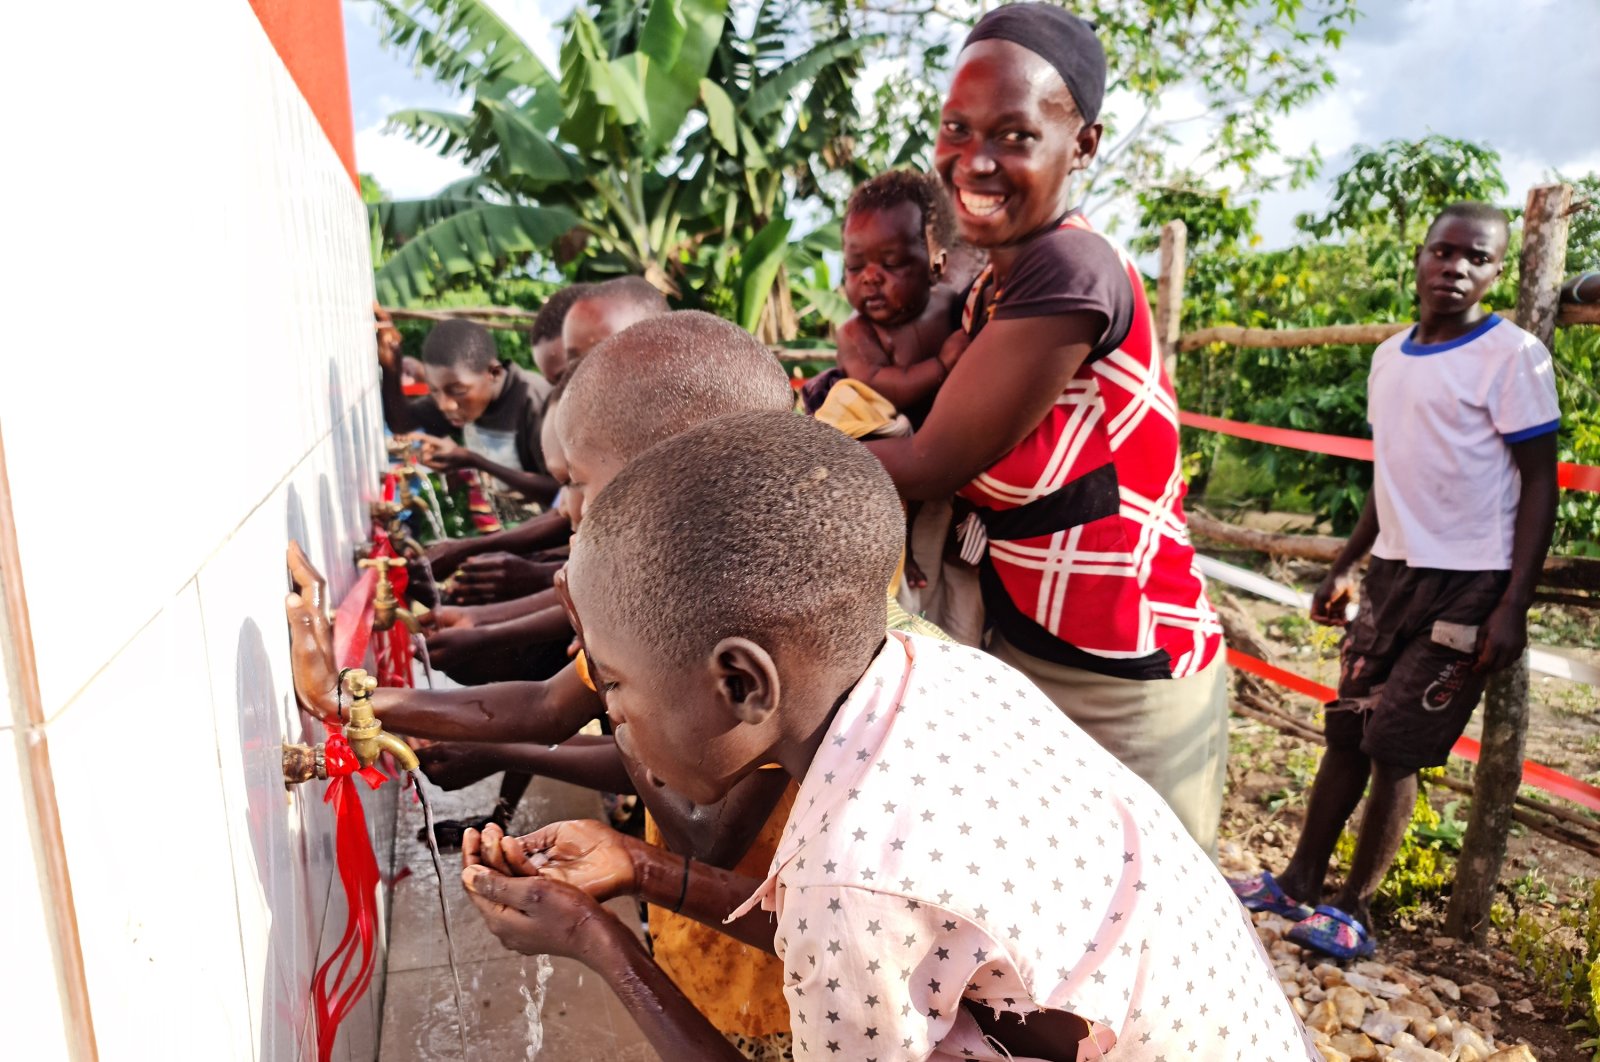 Bulan Sabit Merah Turki menyediakan akses ke air minum di Uganda